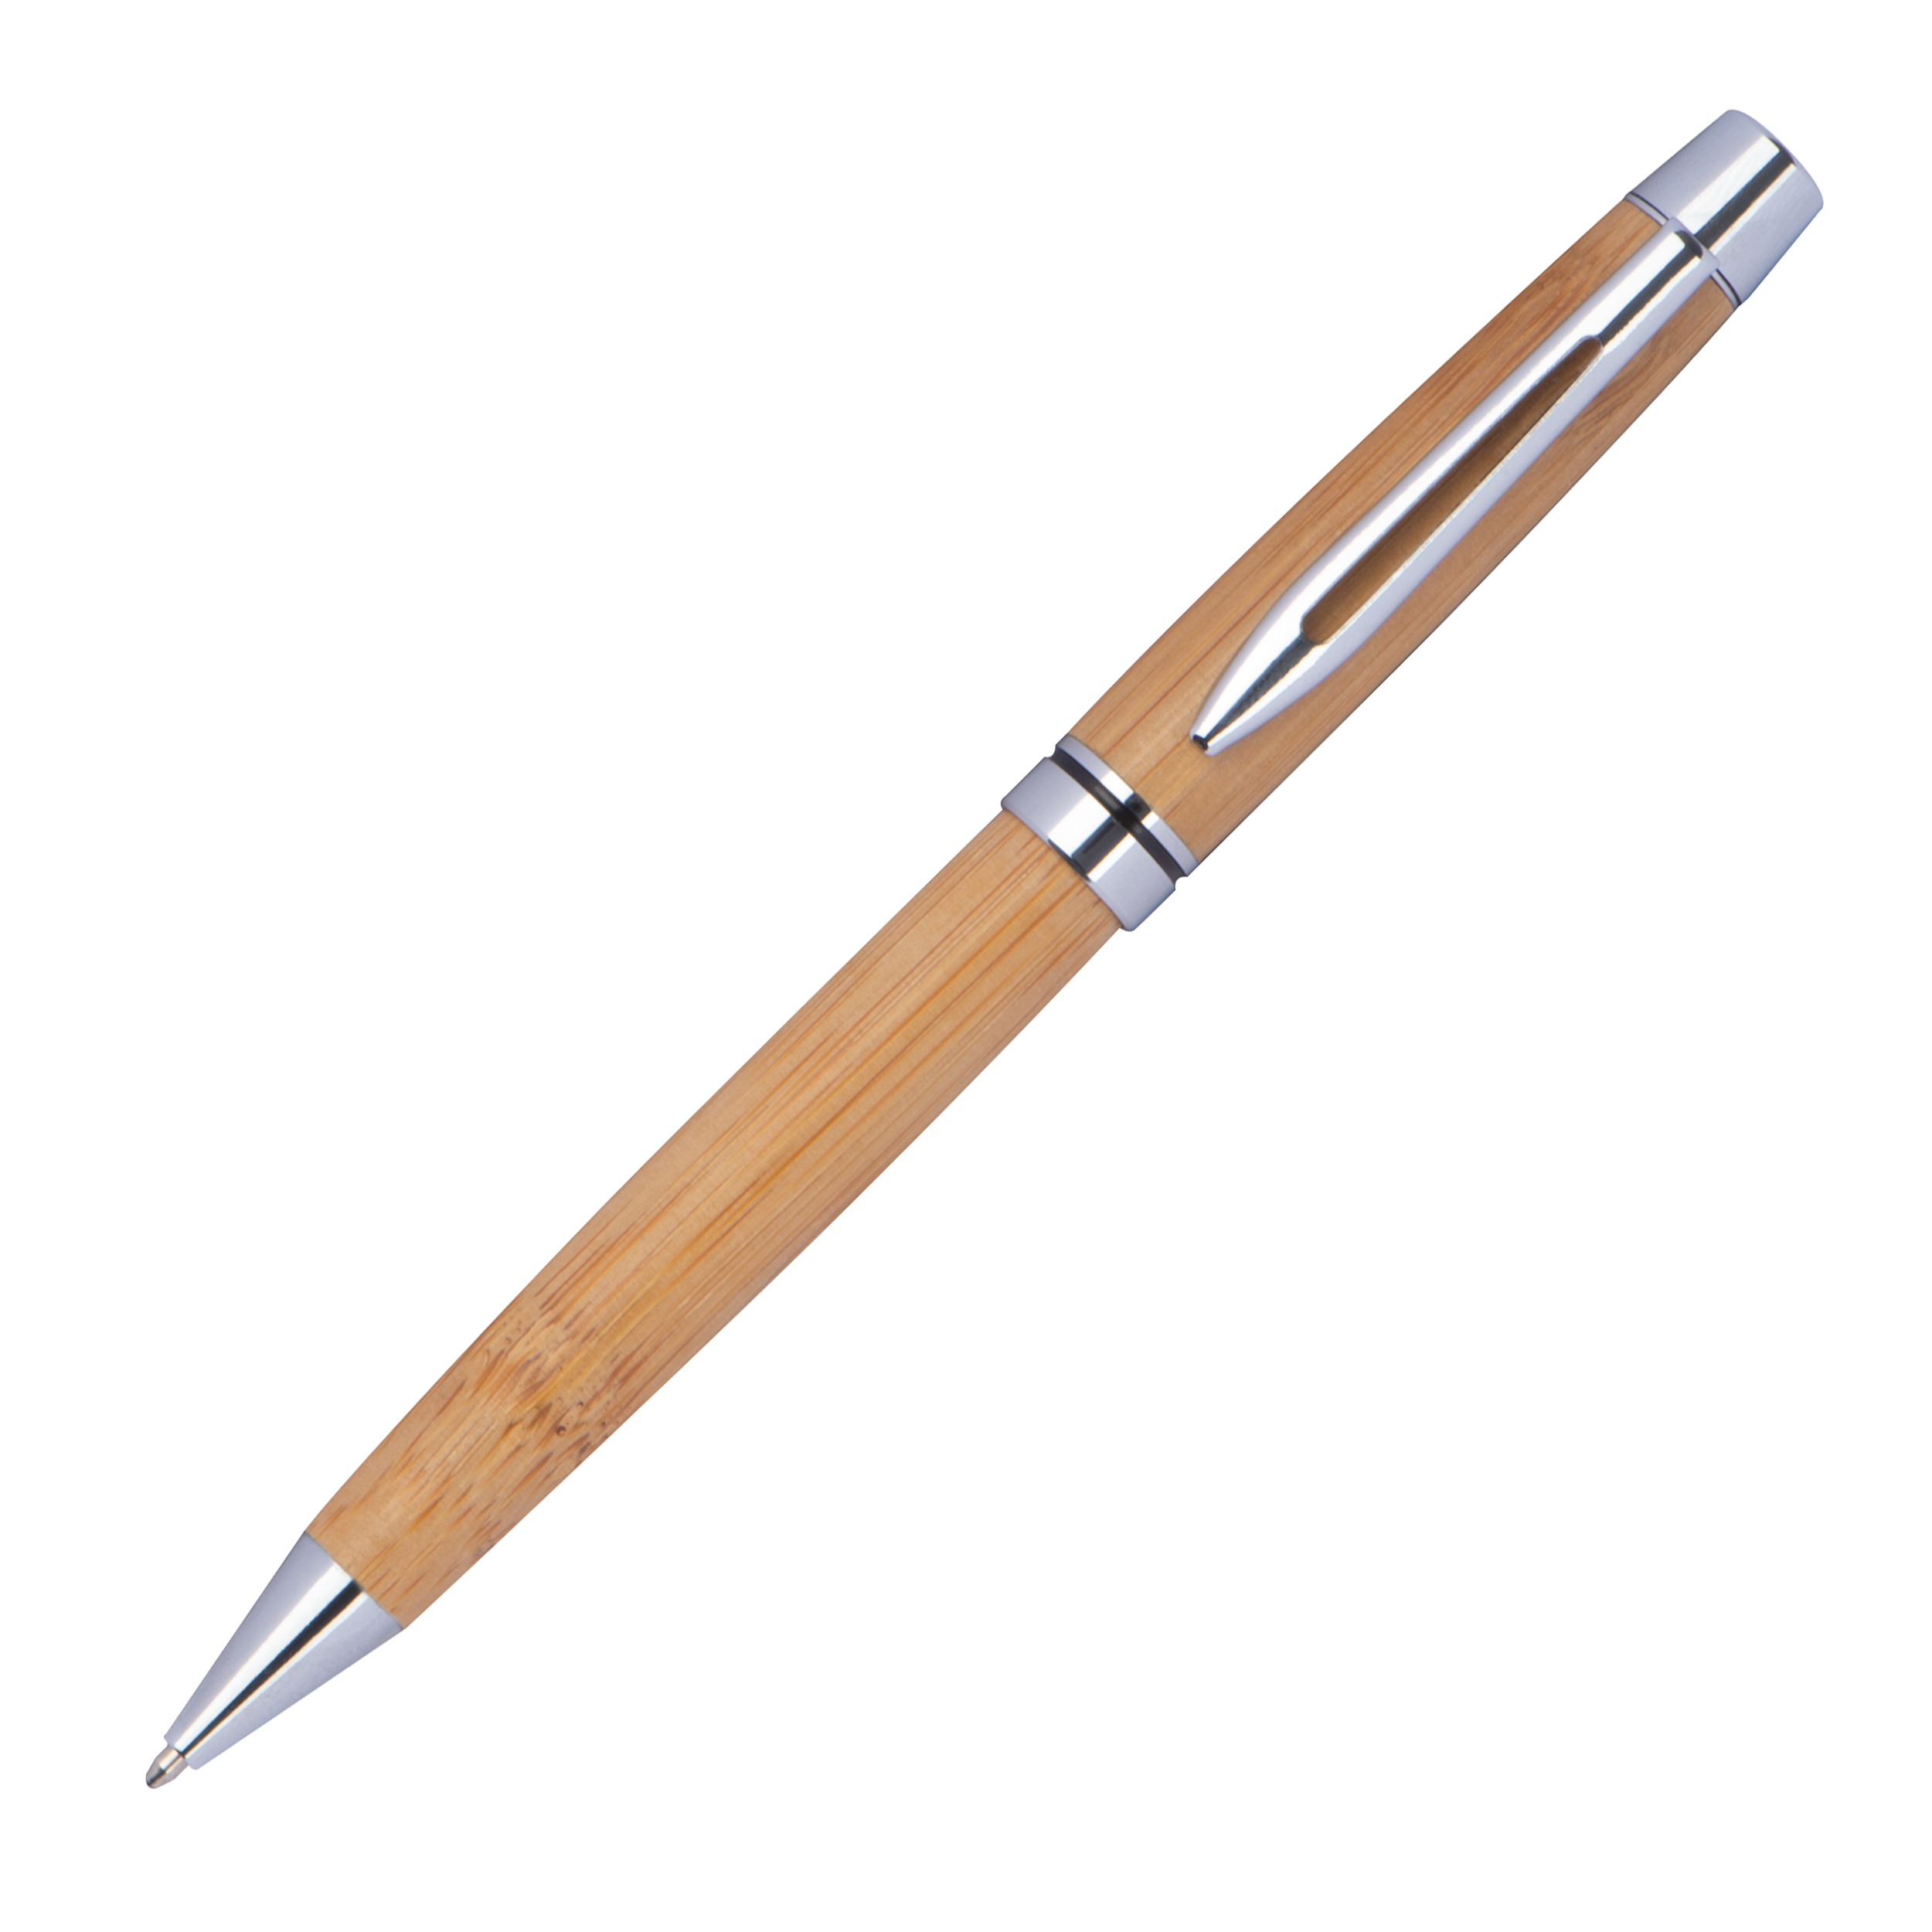 Bolígrafo de madera con aplicaciones metálicas